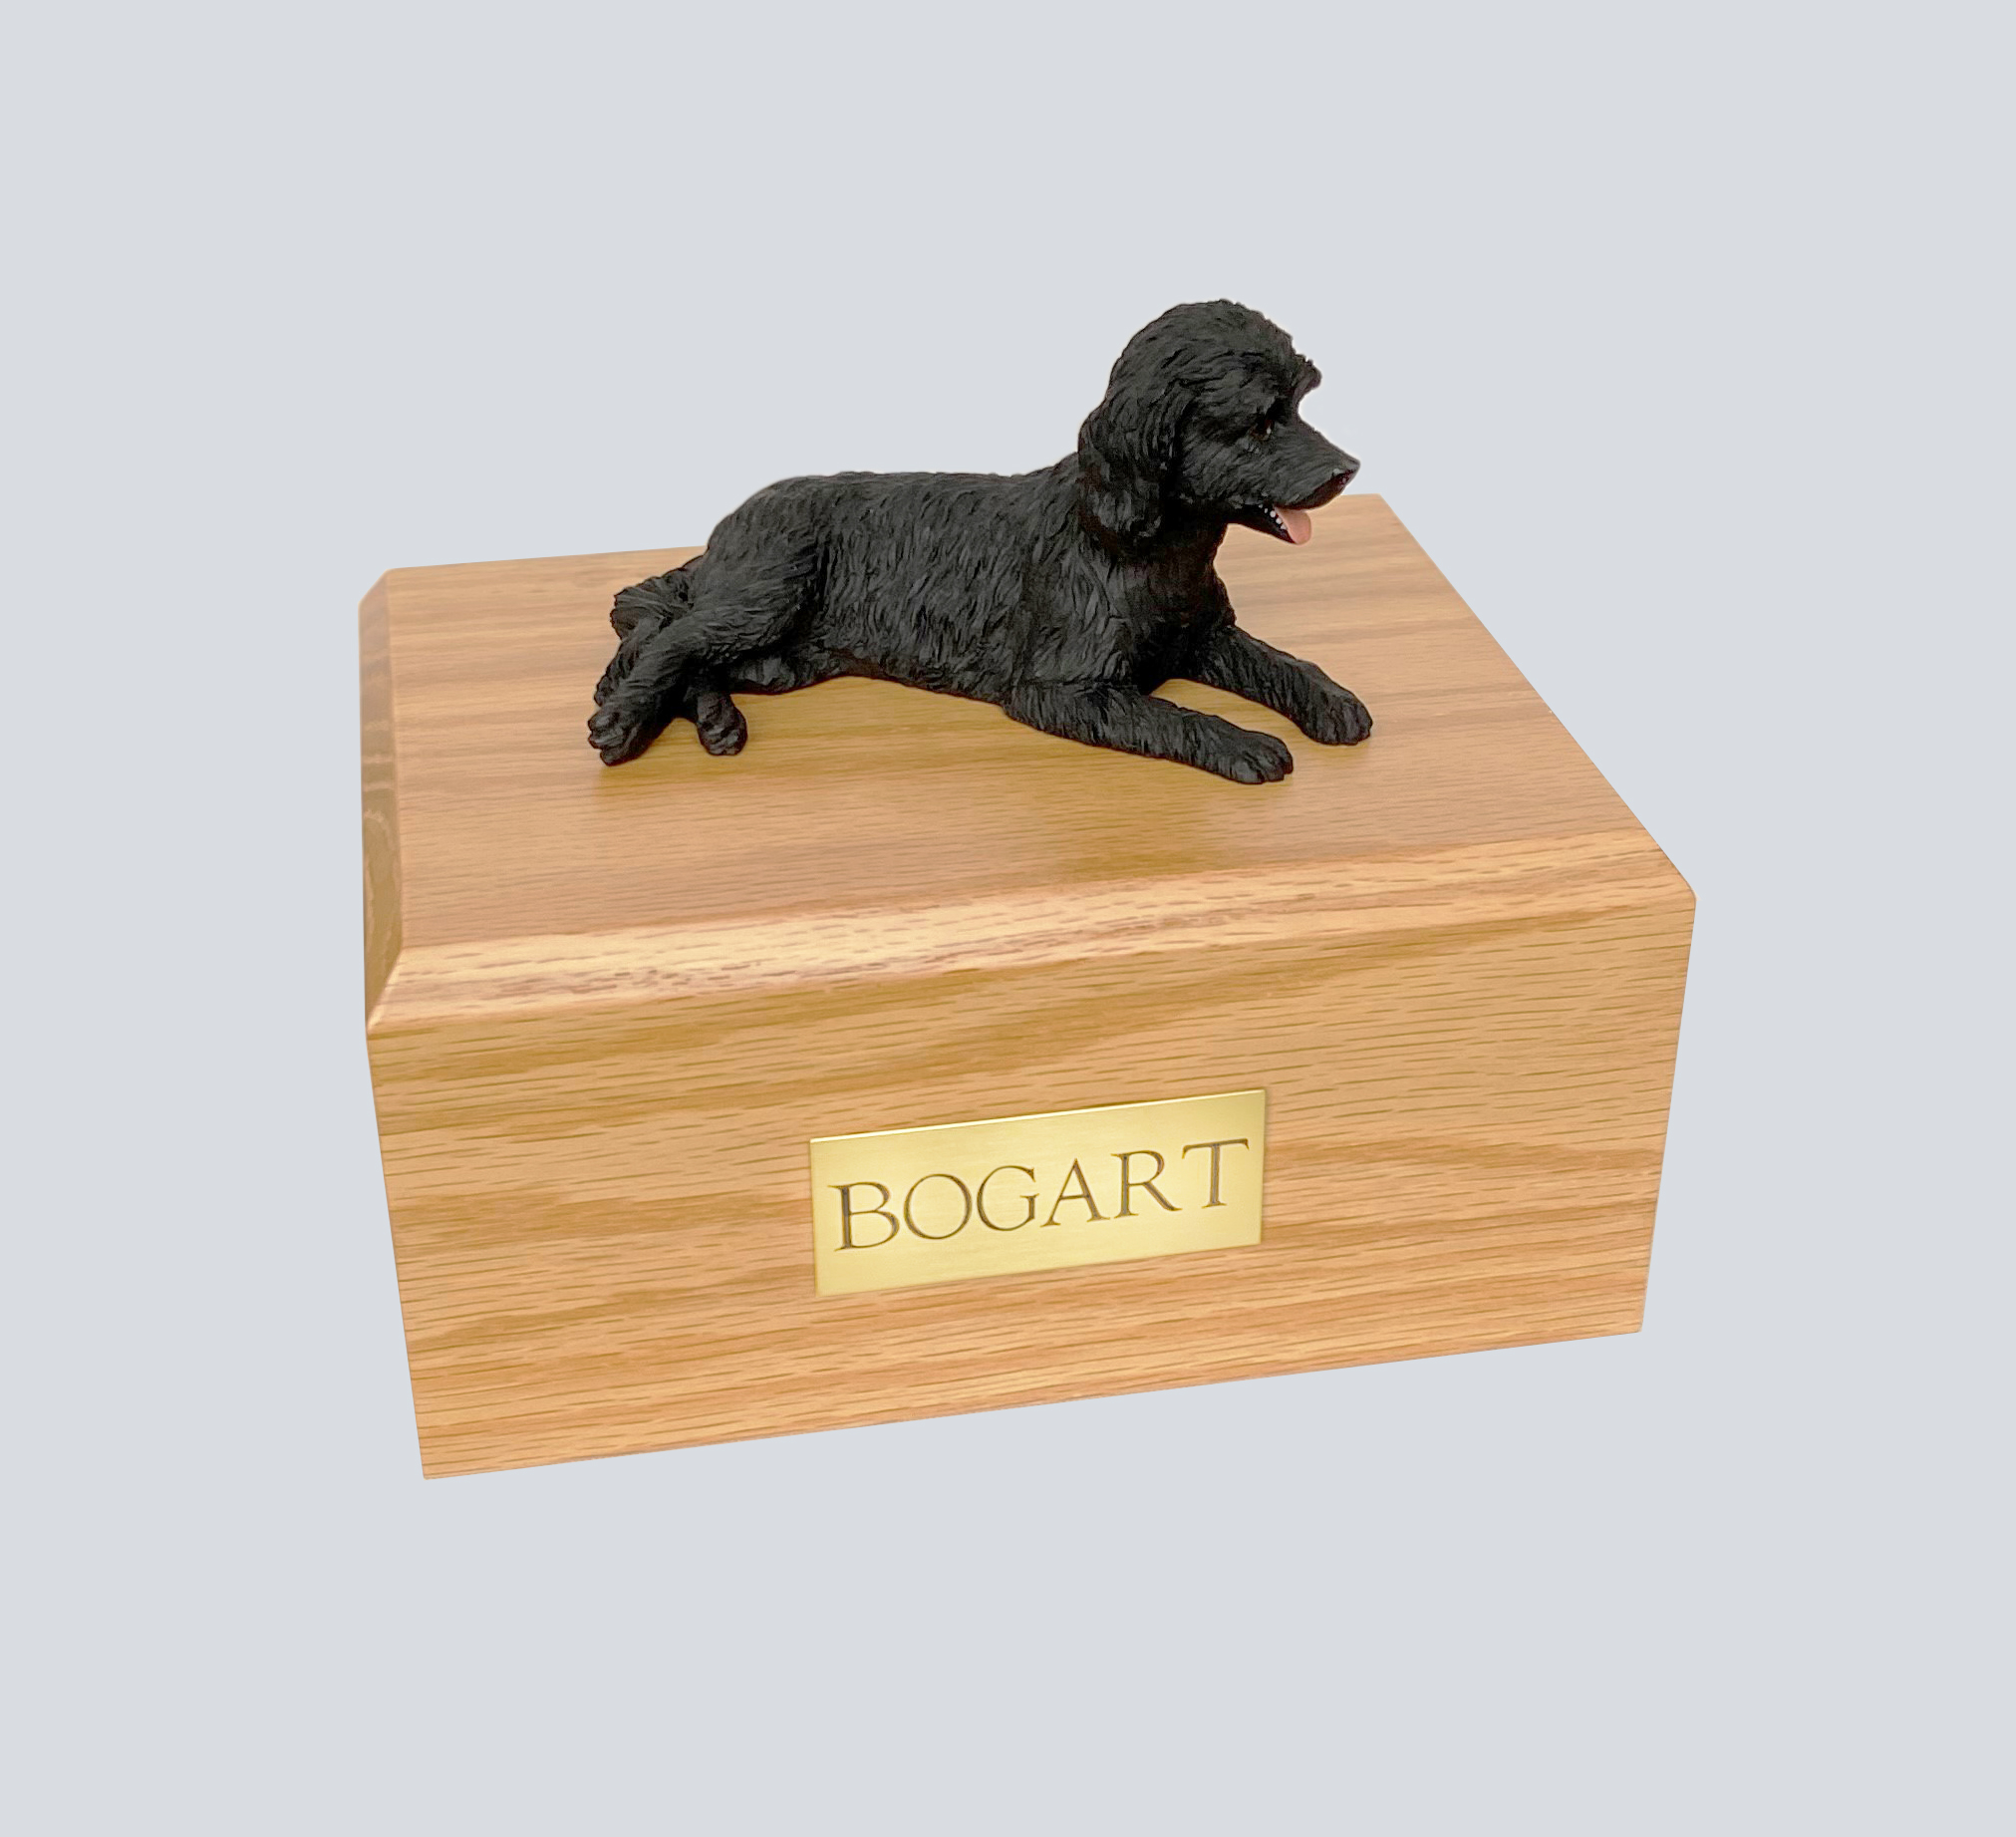 Dog, Labradoodle, Black - Figurine Urn